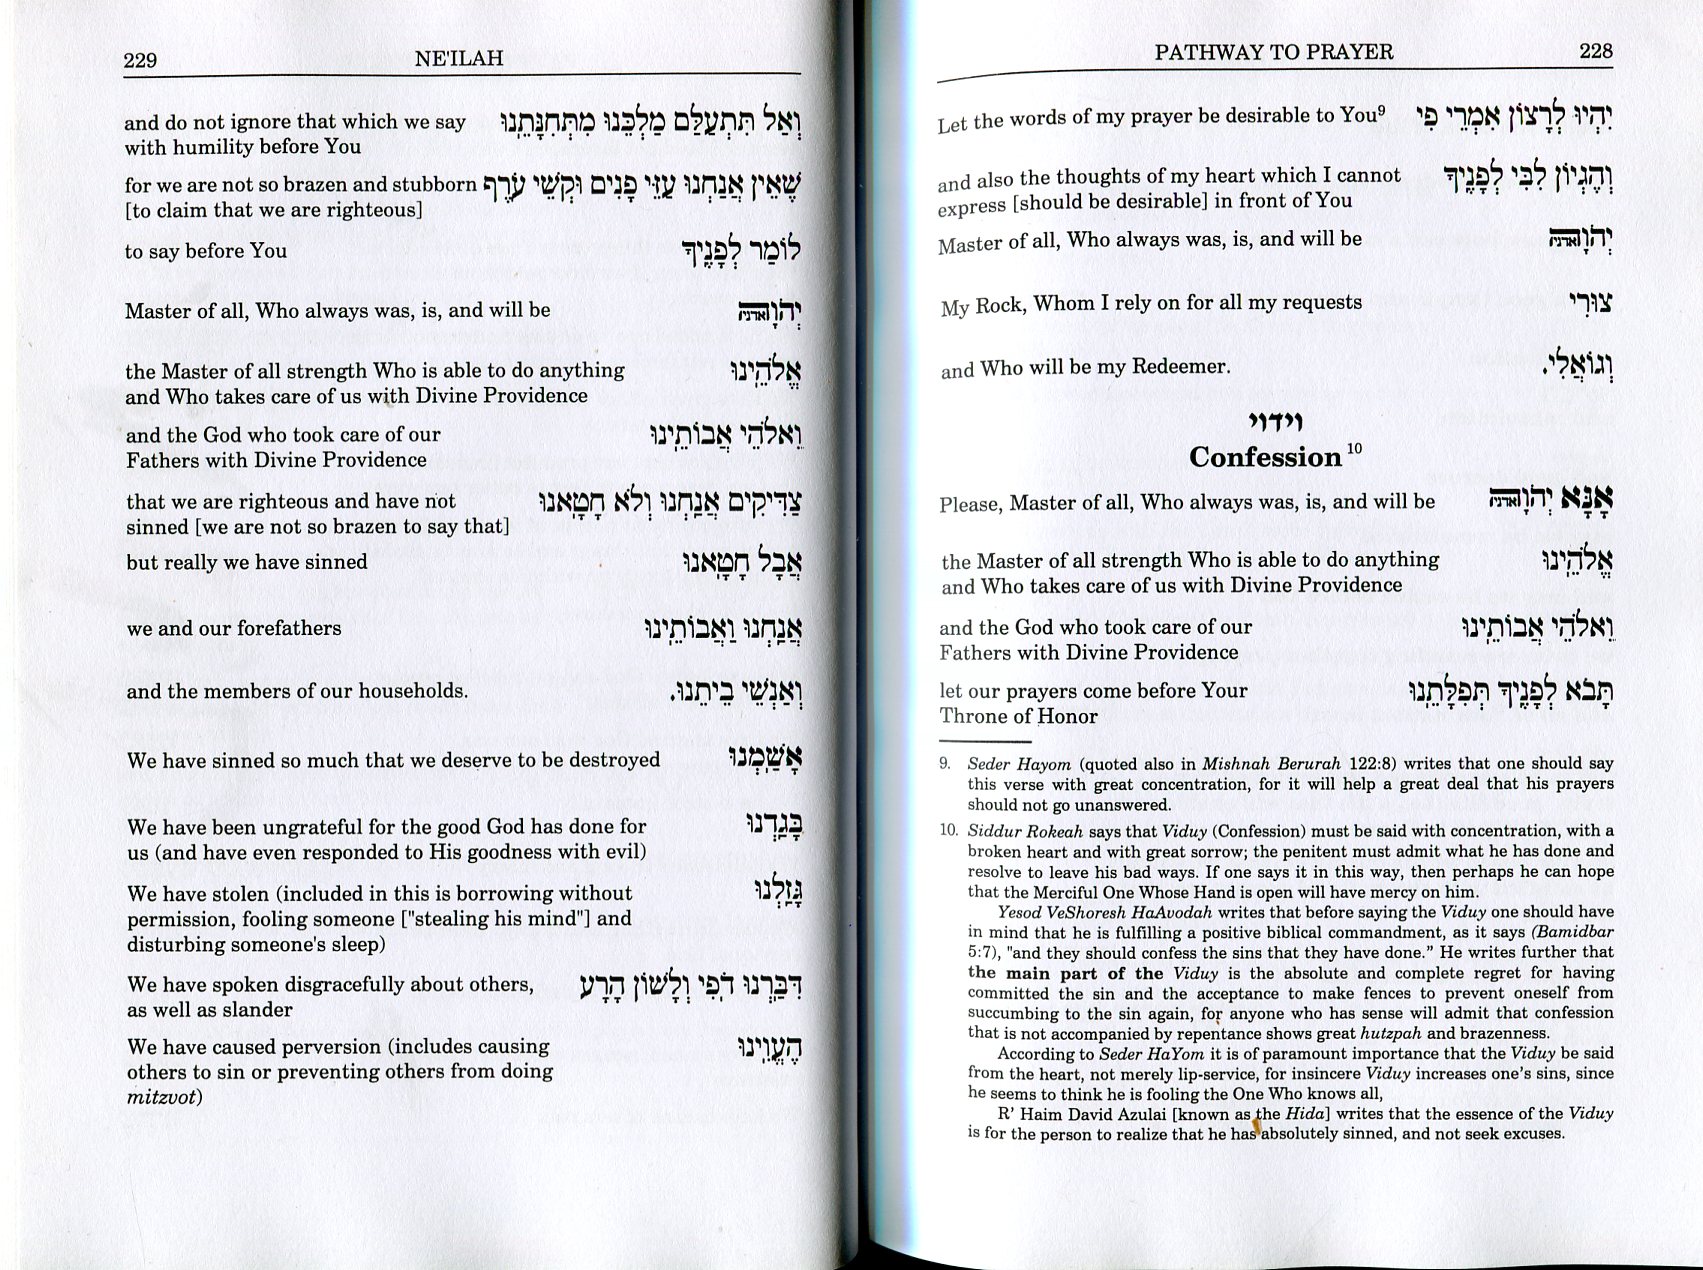 amidah transliteration